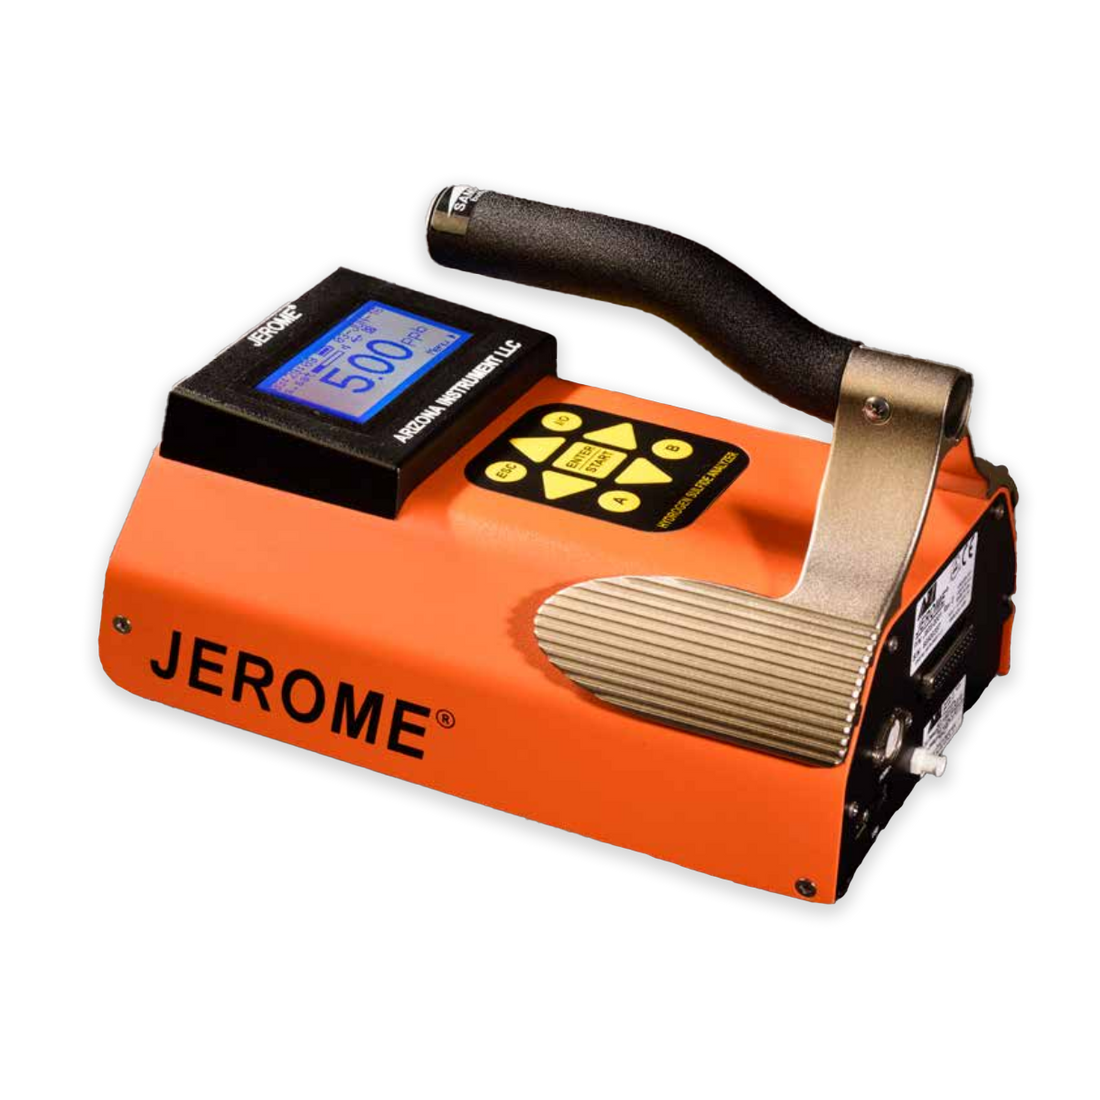 Jerome J605 Hydrogen Sulfide Analyzer